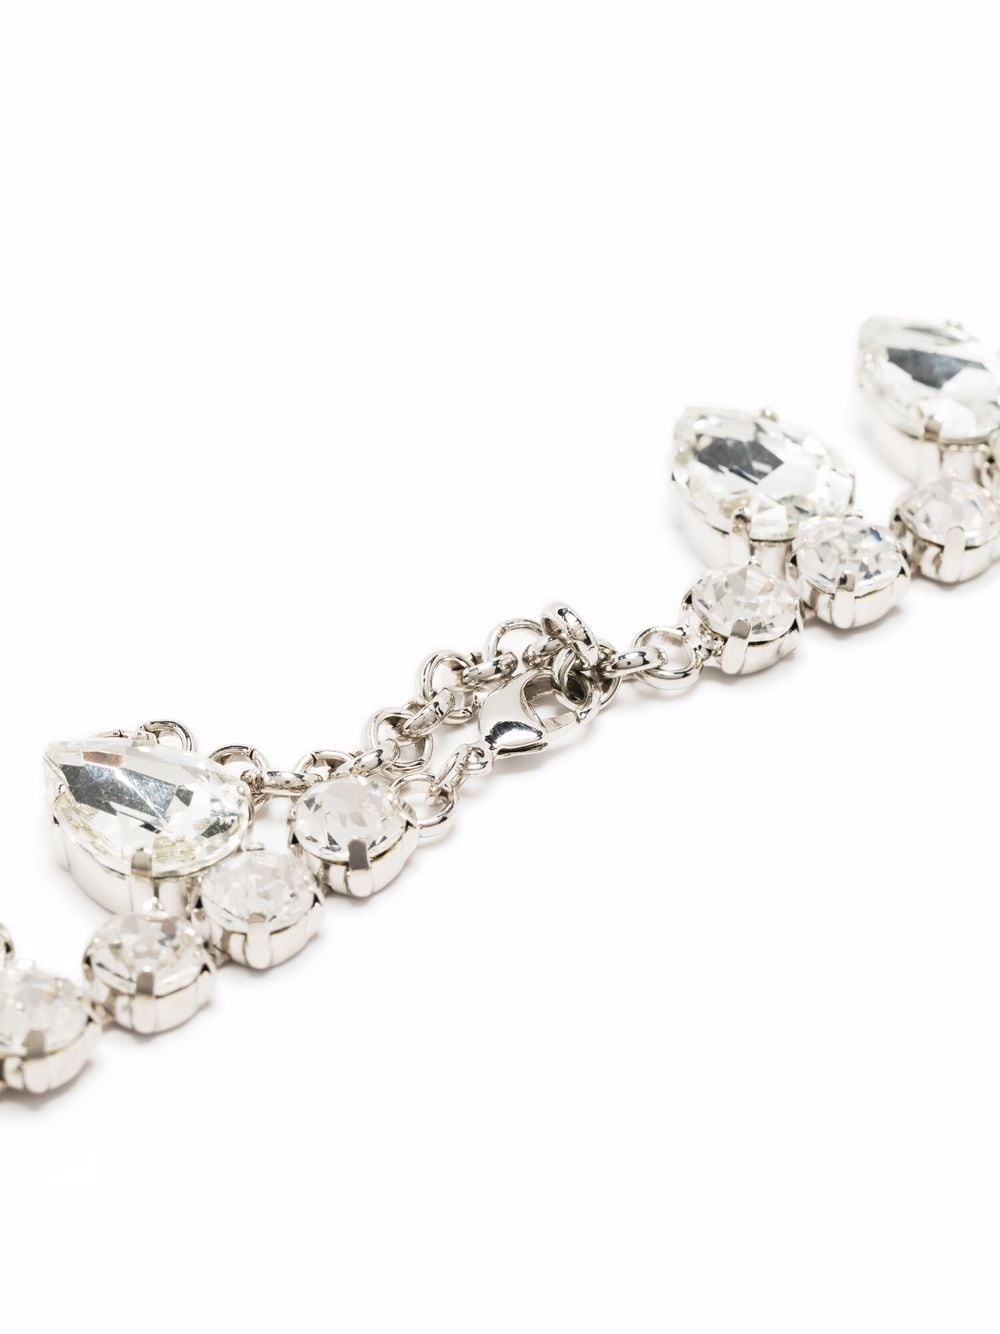 crystal-embellished necklace - 3